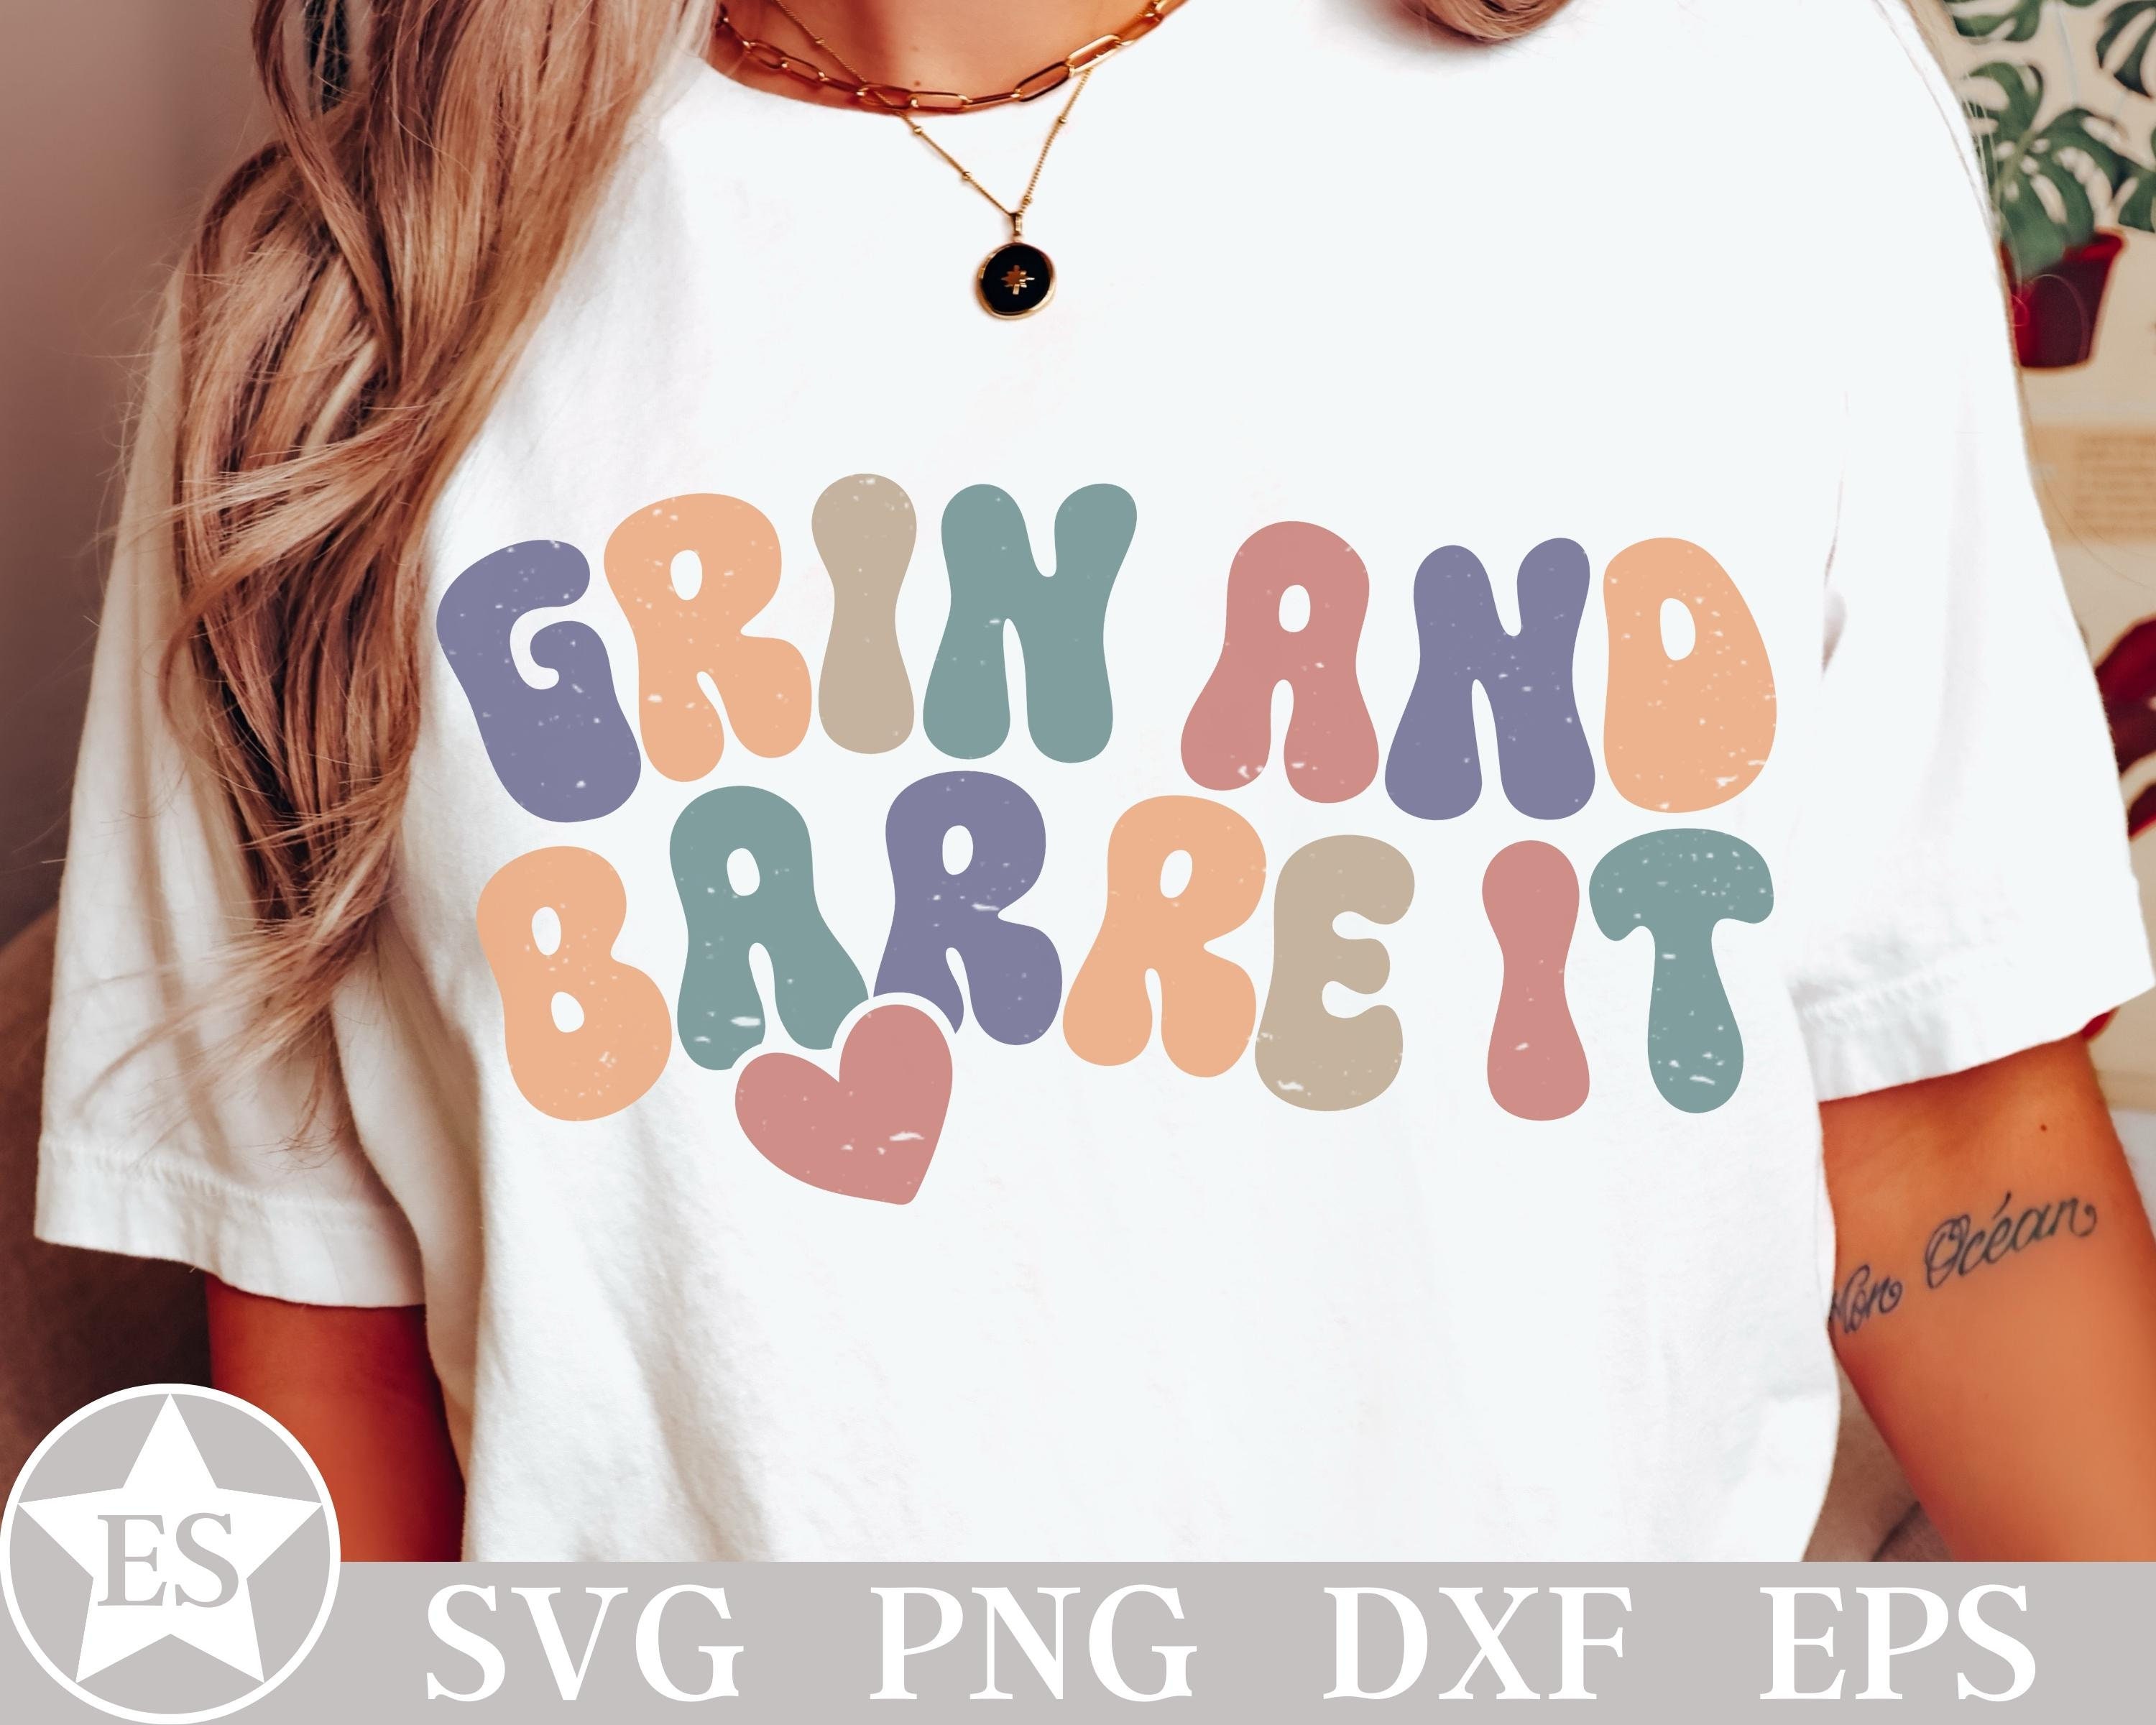 Barre is my Happy Place | Barre Sweatshirt | Barre Shirt | Funny Barre  Shirt | Barre Lover Gift | Barre Clothes | Barre Workout